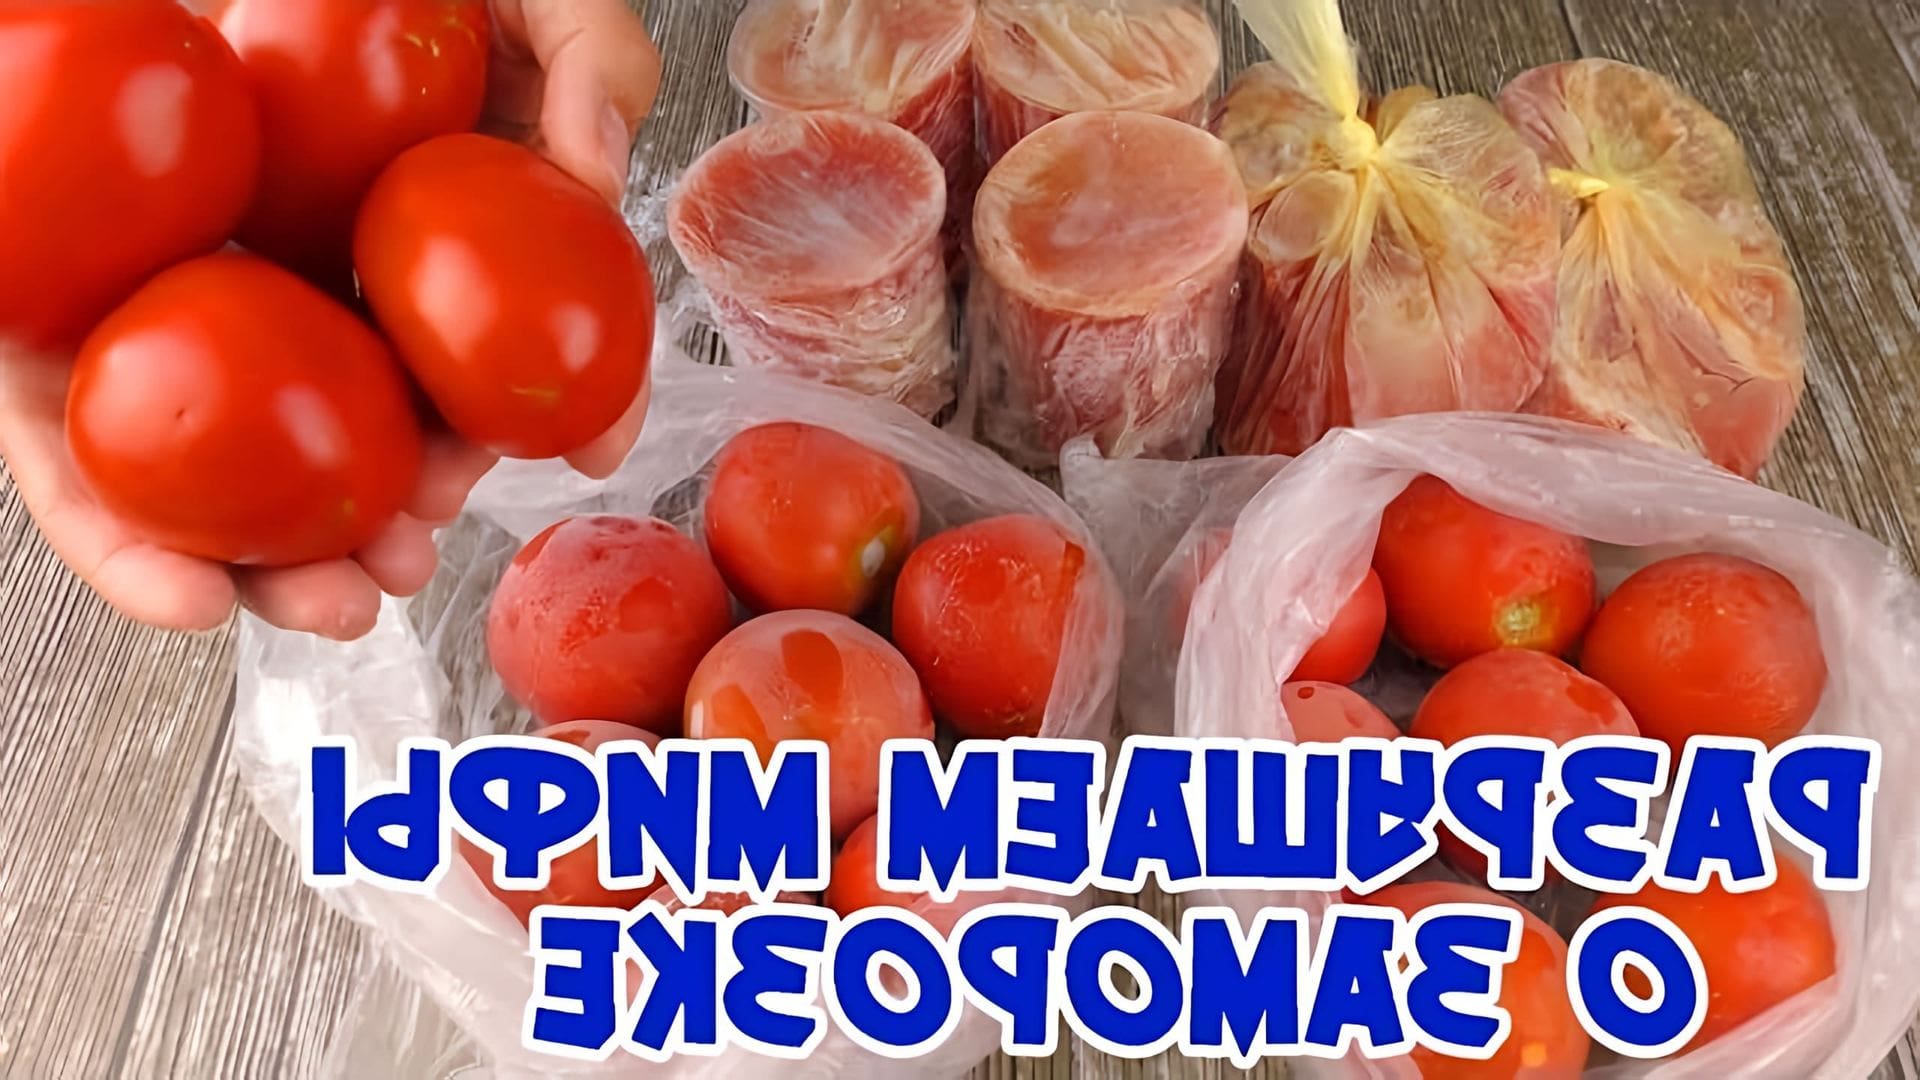 Видео обсуждает замораживание помидоров и возможность добавления их в салаты или пиццу после замораживания